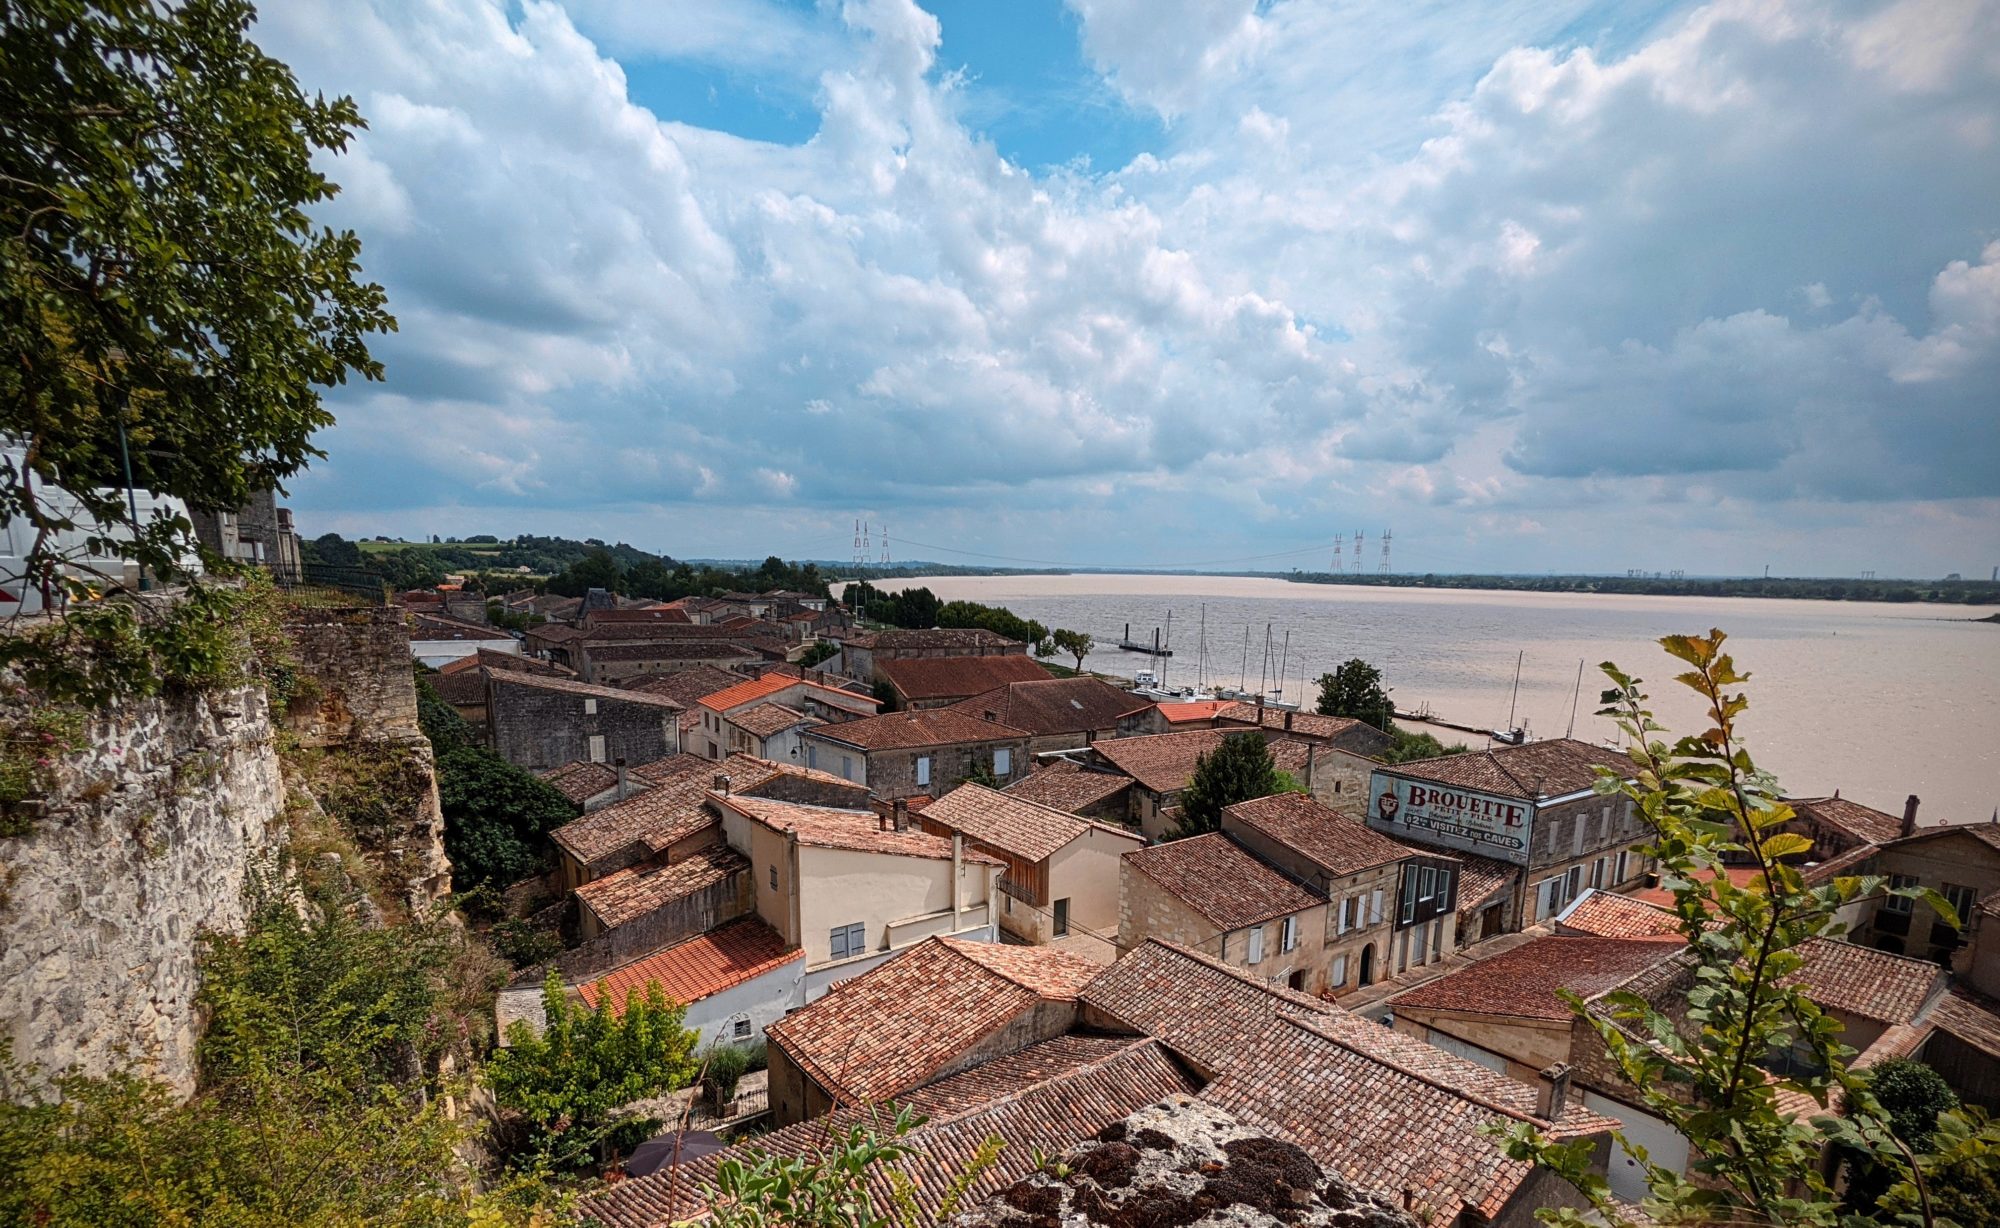 Oubliée, le vieux village de Bourg sur Gironde